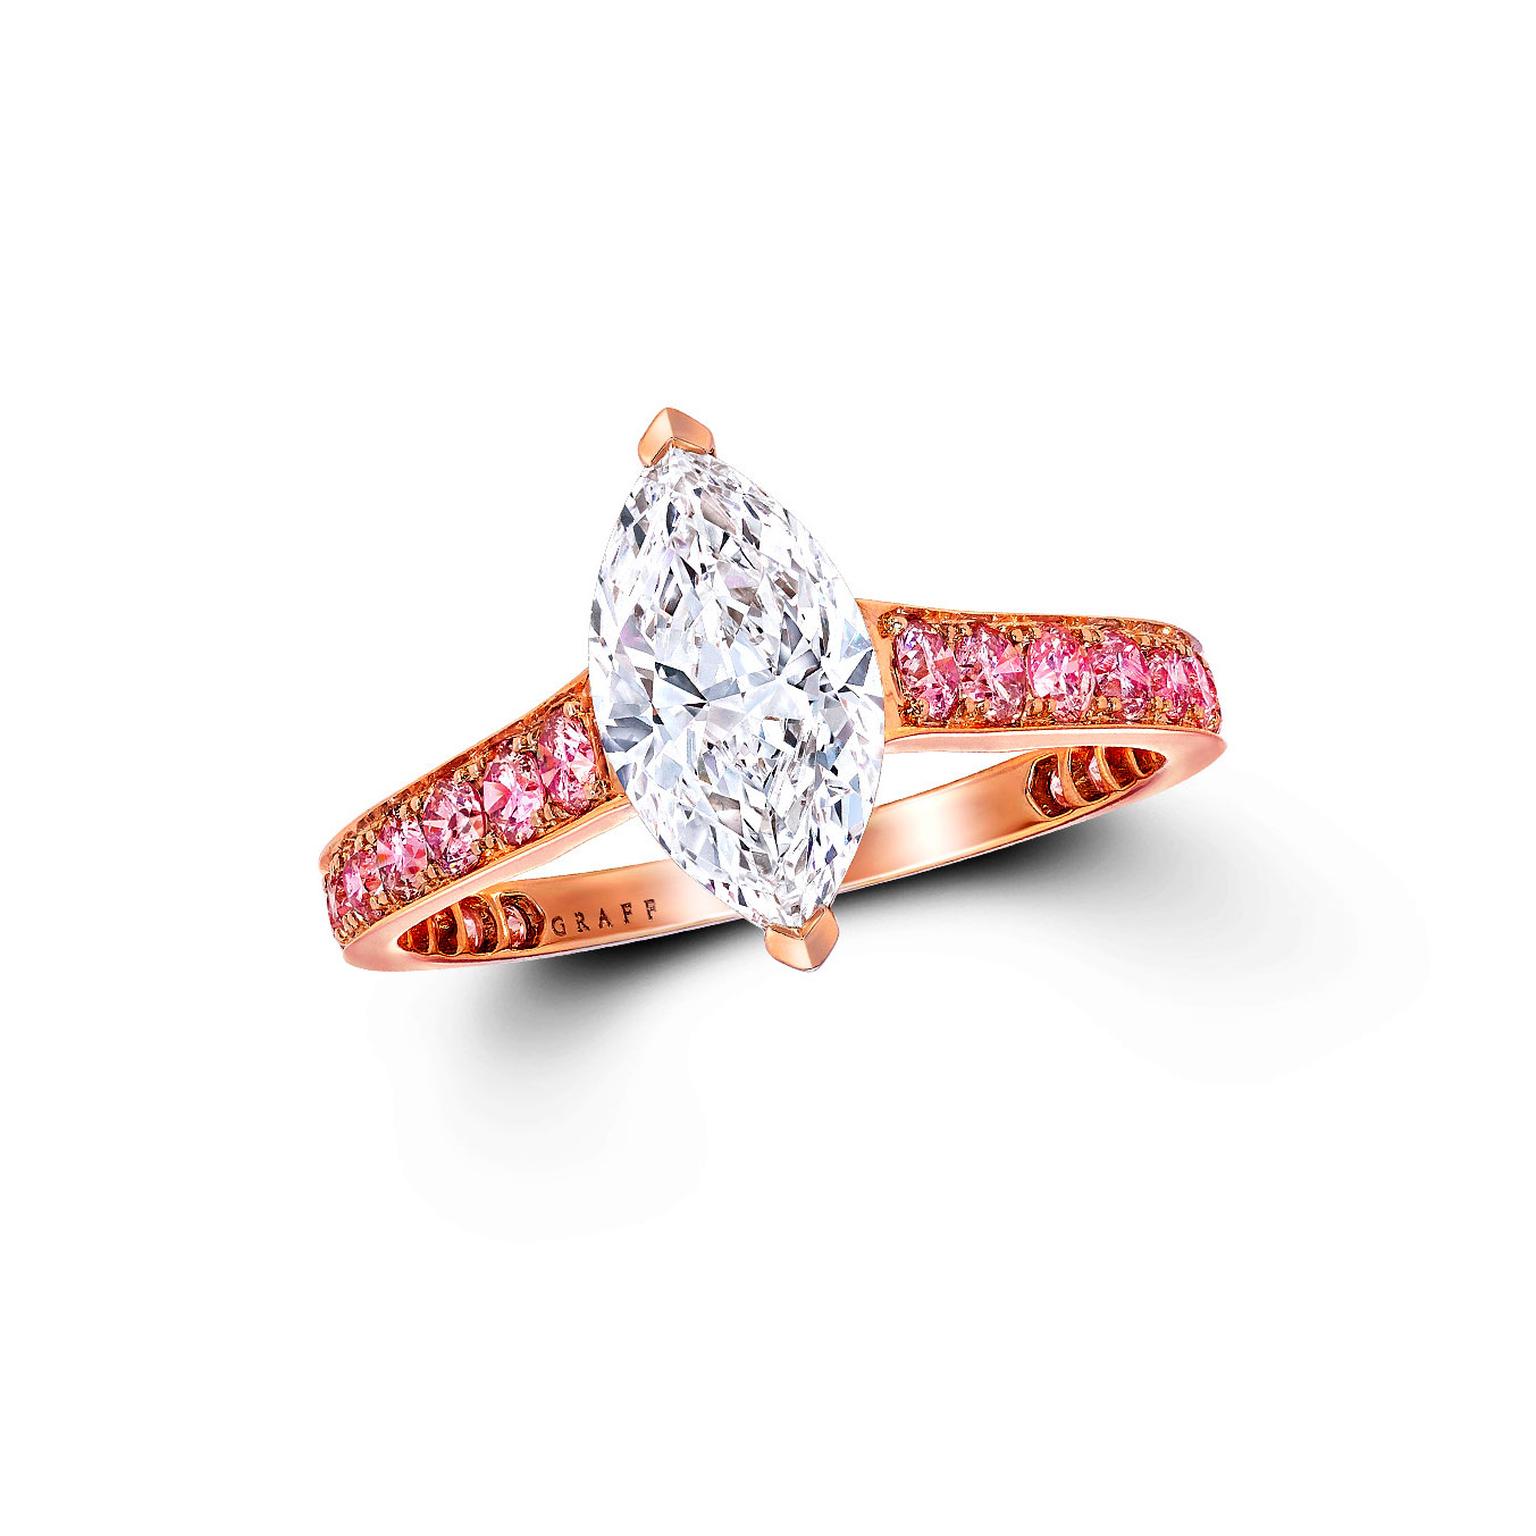 Fancy Light Pink Diamond Ring Brings $358,500 as Top Lot in $5+ Million  Fine Jewelry Event - Eloge de l'Art par Alain Truong